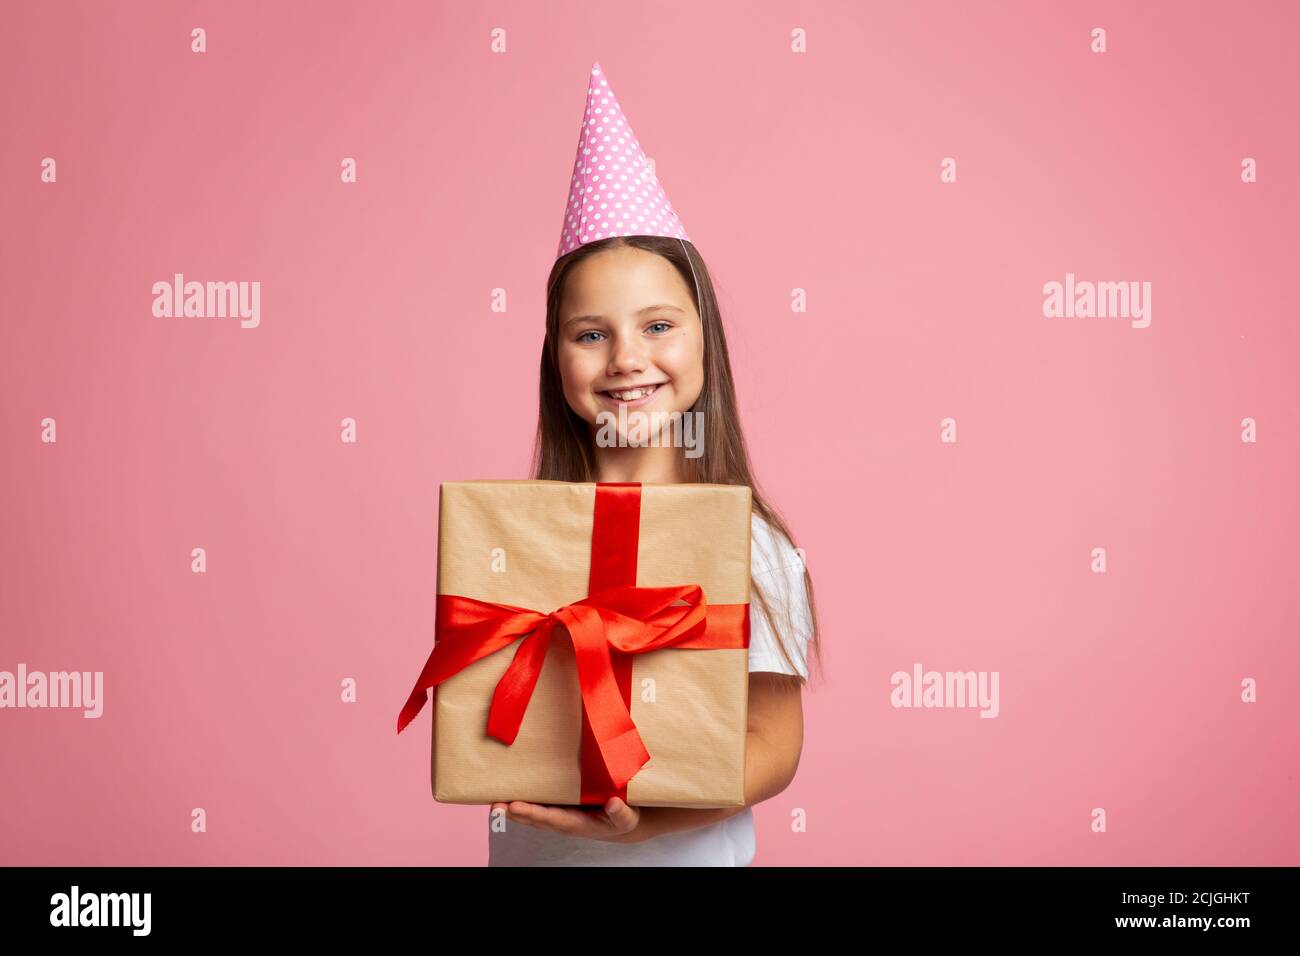 Geburtstagsgeschenk. Portrait aufgeregt Mädchen in Mütze und großes Geschenk Stockfoto